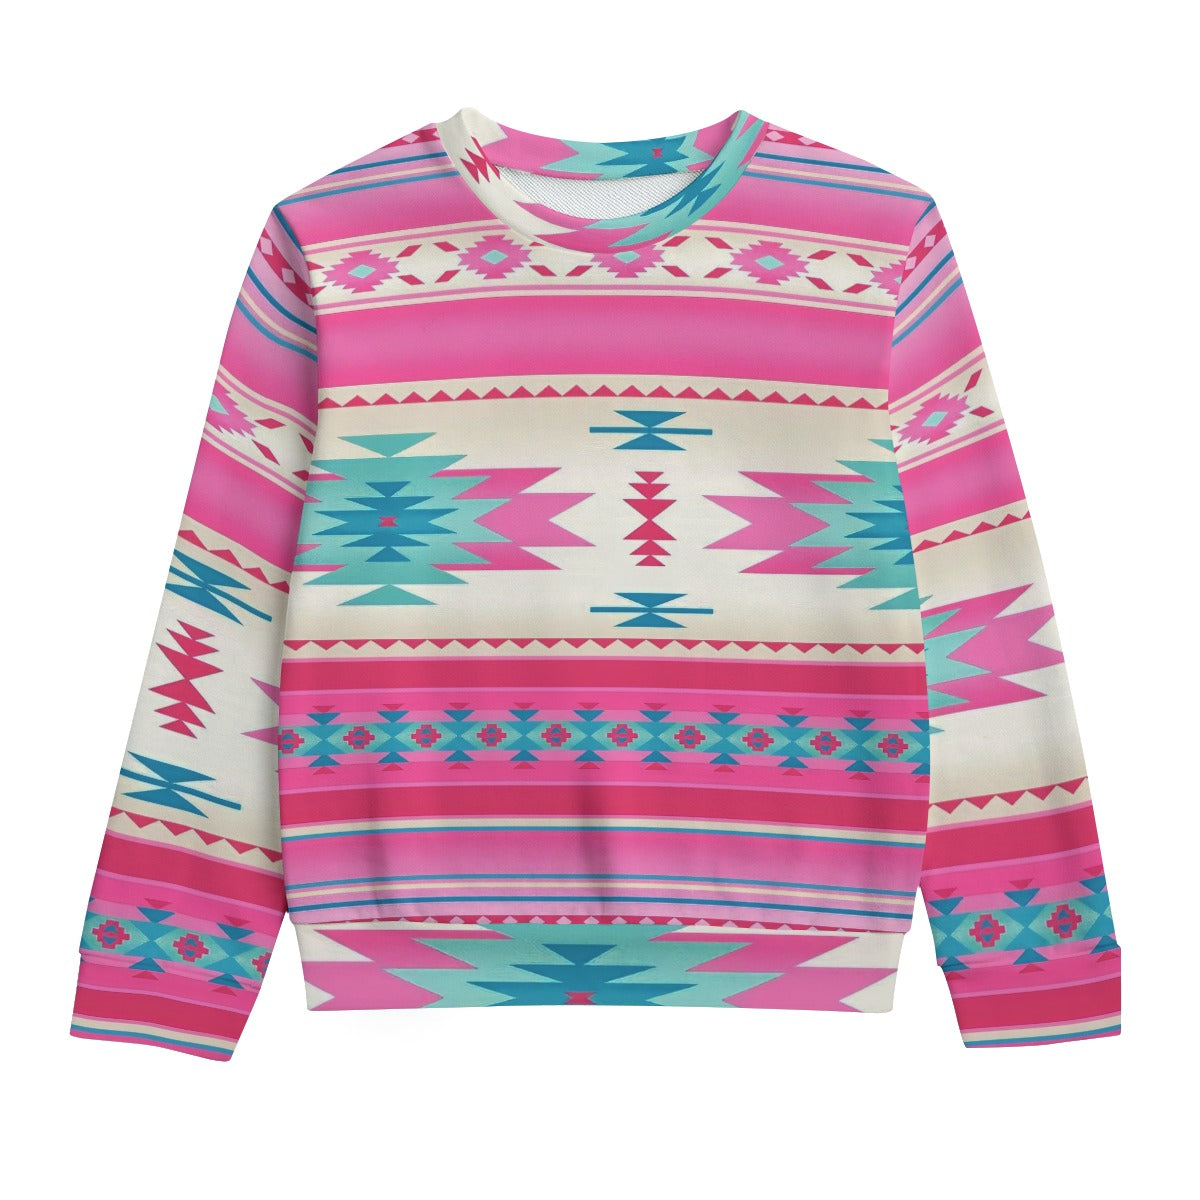 Pink Aztec Kid's Round Neck Sweatshirt